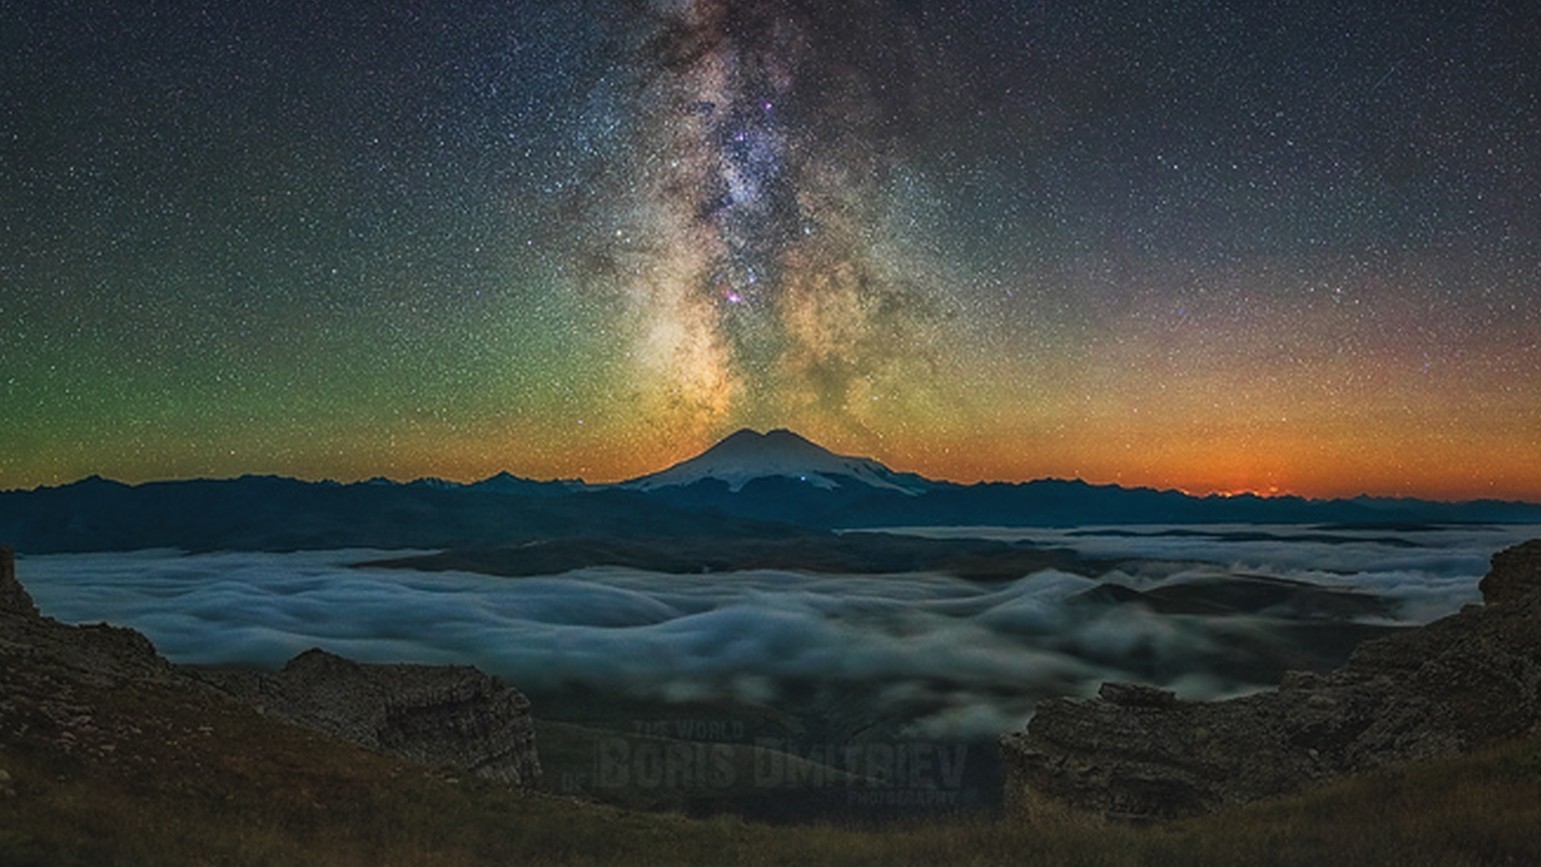 Ses photos magnifiques révèlent la beauté du ciel nocturne dans les montagnes de Géorgie, de Crimée et dans les prairies russes.